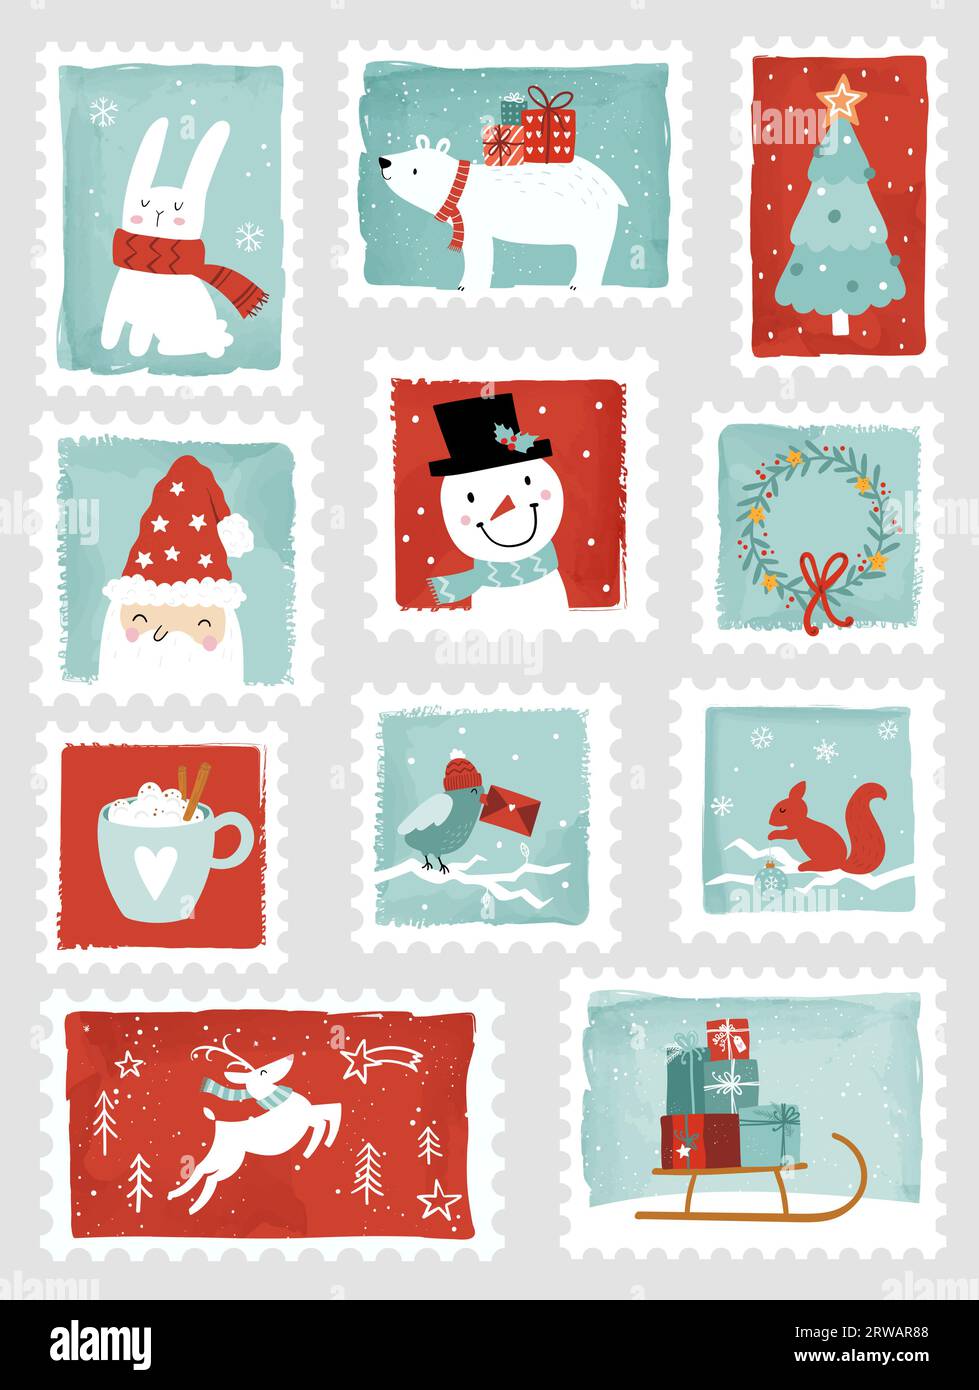 Splendidi francobolli natalizi disegnati a mano, stile cartoni animati, elementi decorativi. Set di illustrazioni di adesivi vettoriali per le festività Illustrazione Vettoriale